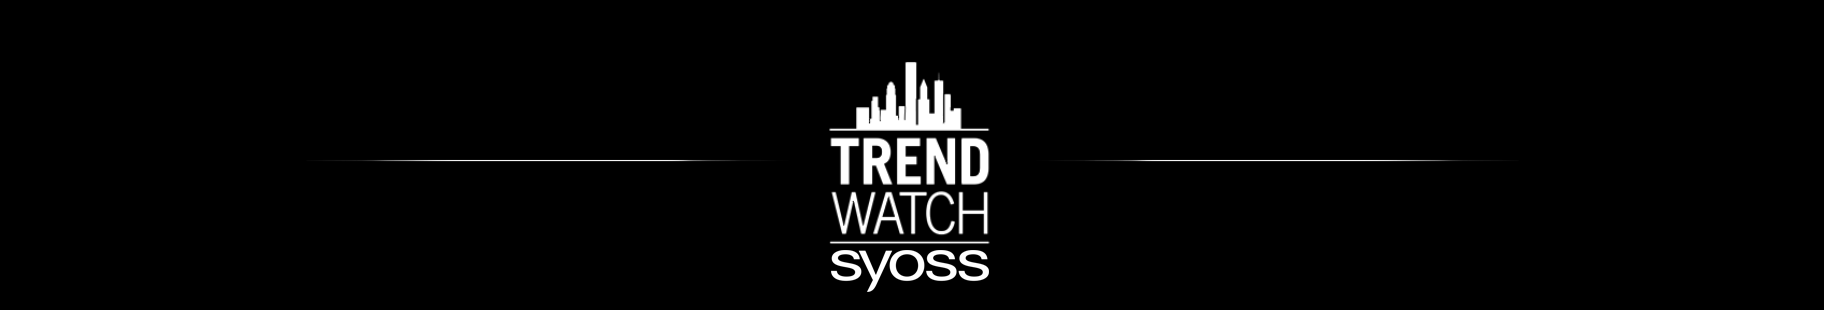 TrendWatch by Syoss